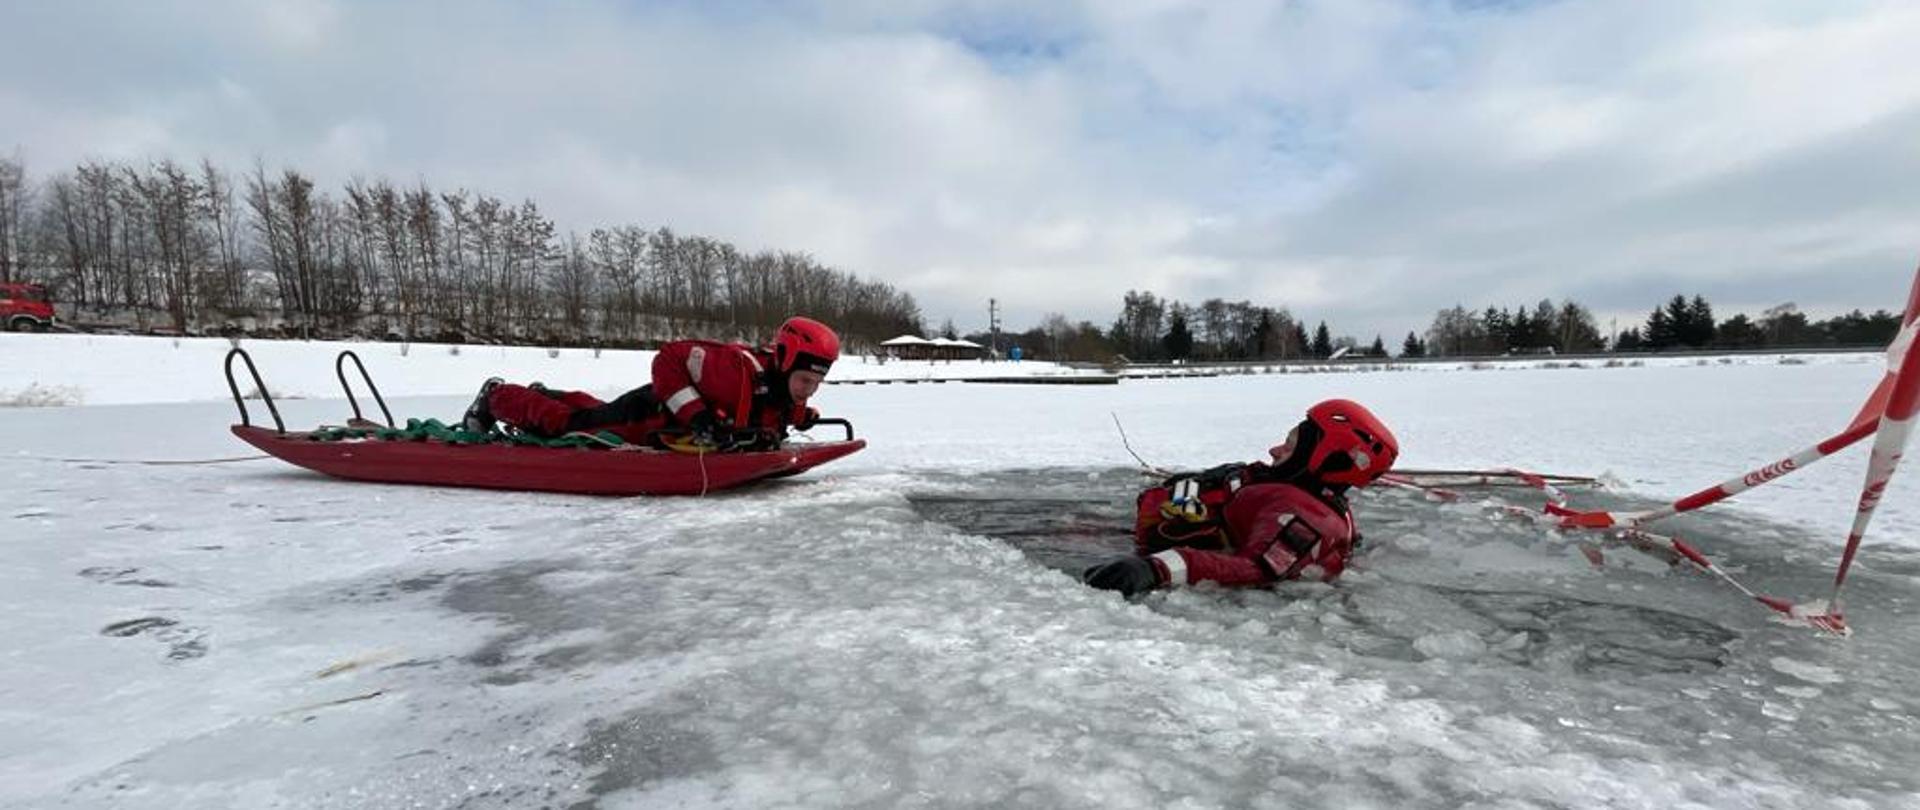 Ćwiczenia kazimierskich strażaków z zakresu ratownictwa lodowego na zbiorniku retencyjnym w Kazimierzy Wielkiej